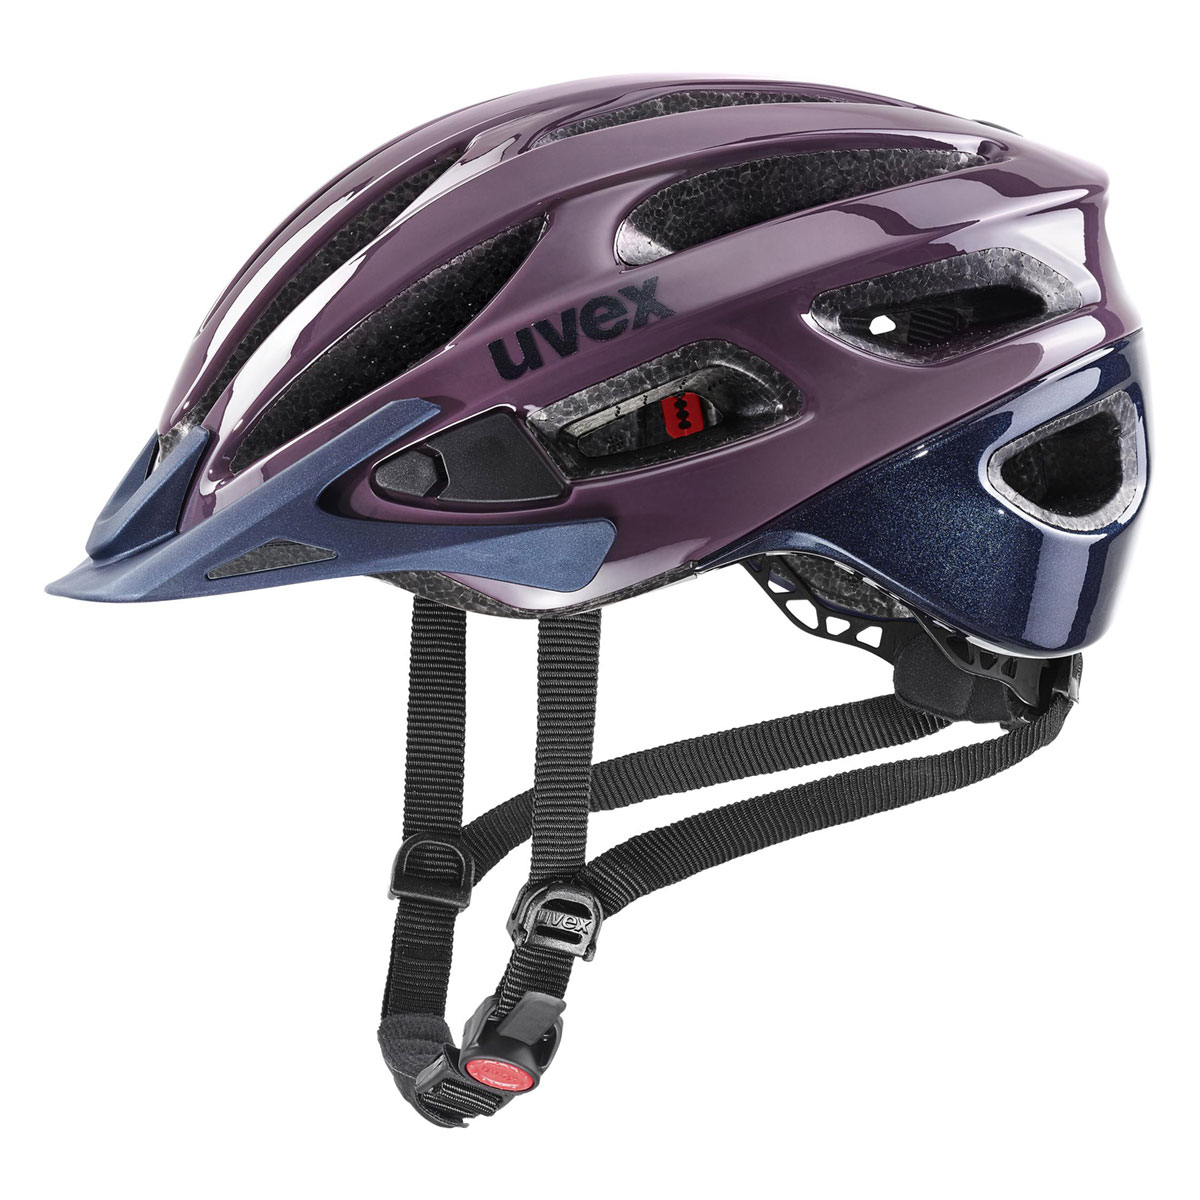 Cyklistická helma Uvex TRUE, Plum - Deep Space 52-56cm